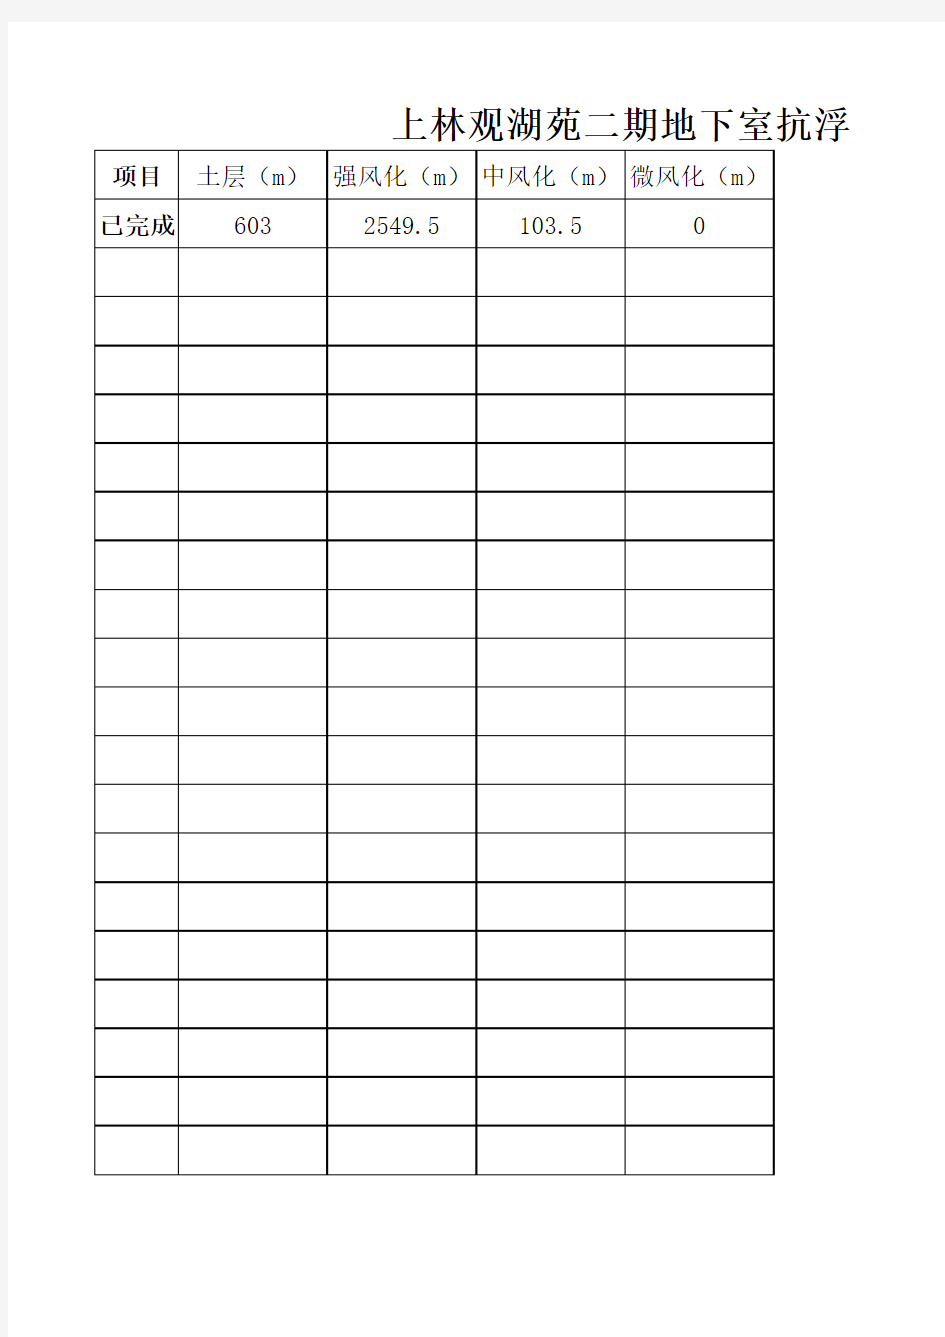 上林观湖苑二期抗浮锚杆施工记录表(11月5日汇总)